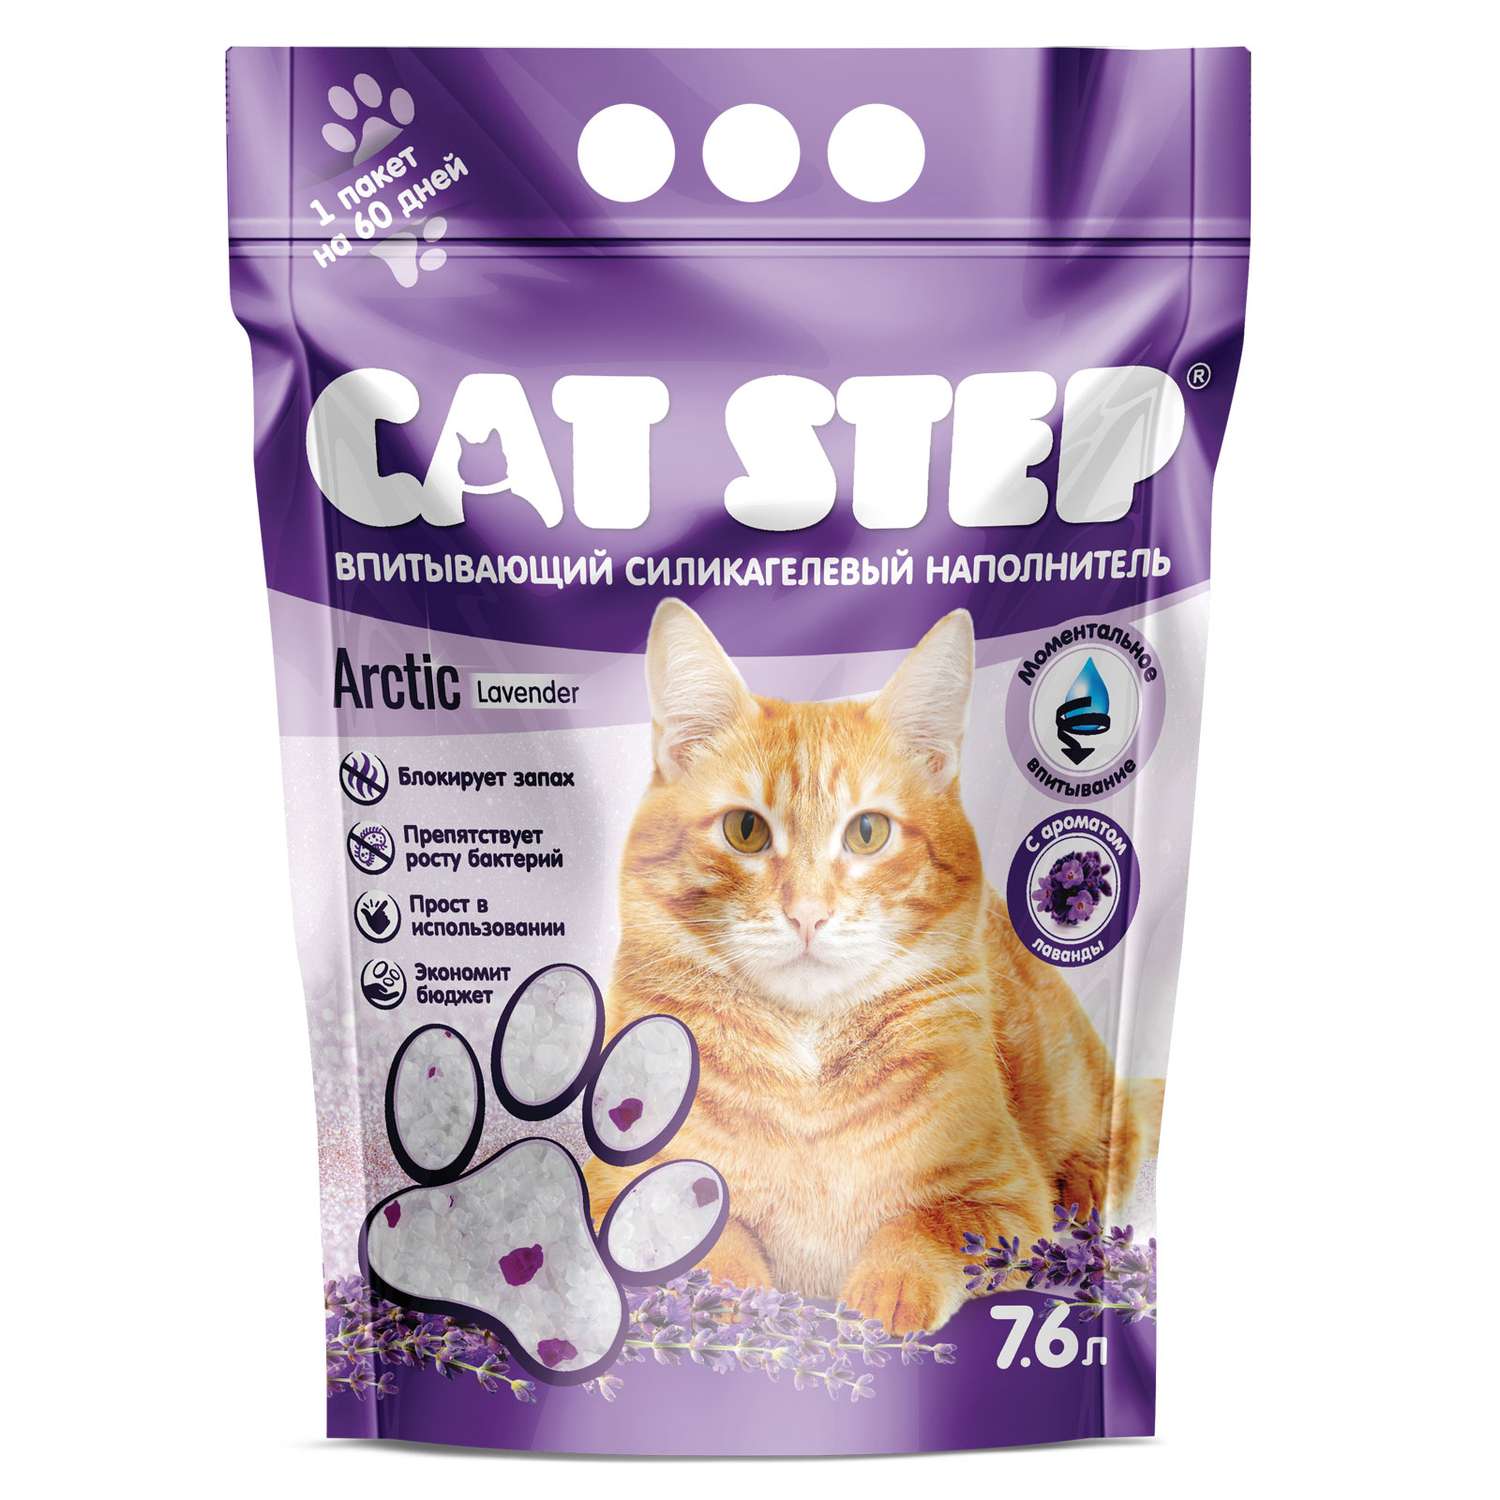 Наполнитель для кошек Cat Step Arctic Lavender впитывающий силикагелевый 7.6л - фото 2